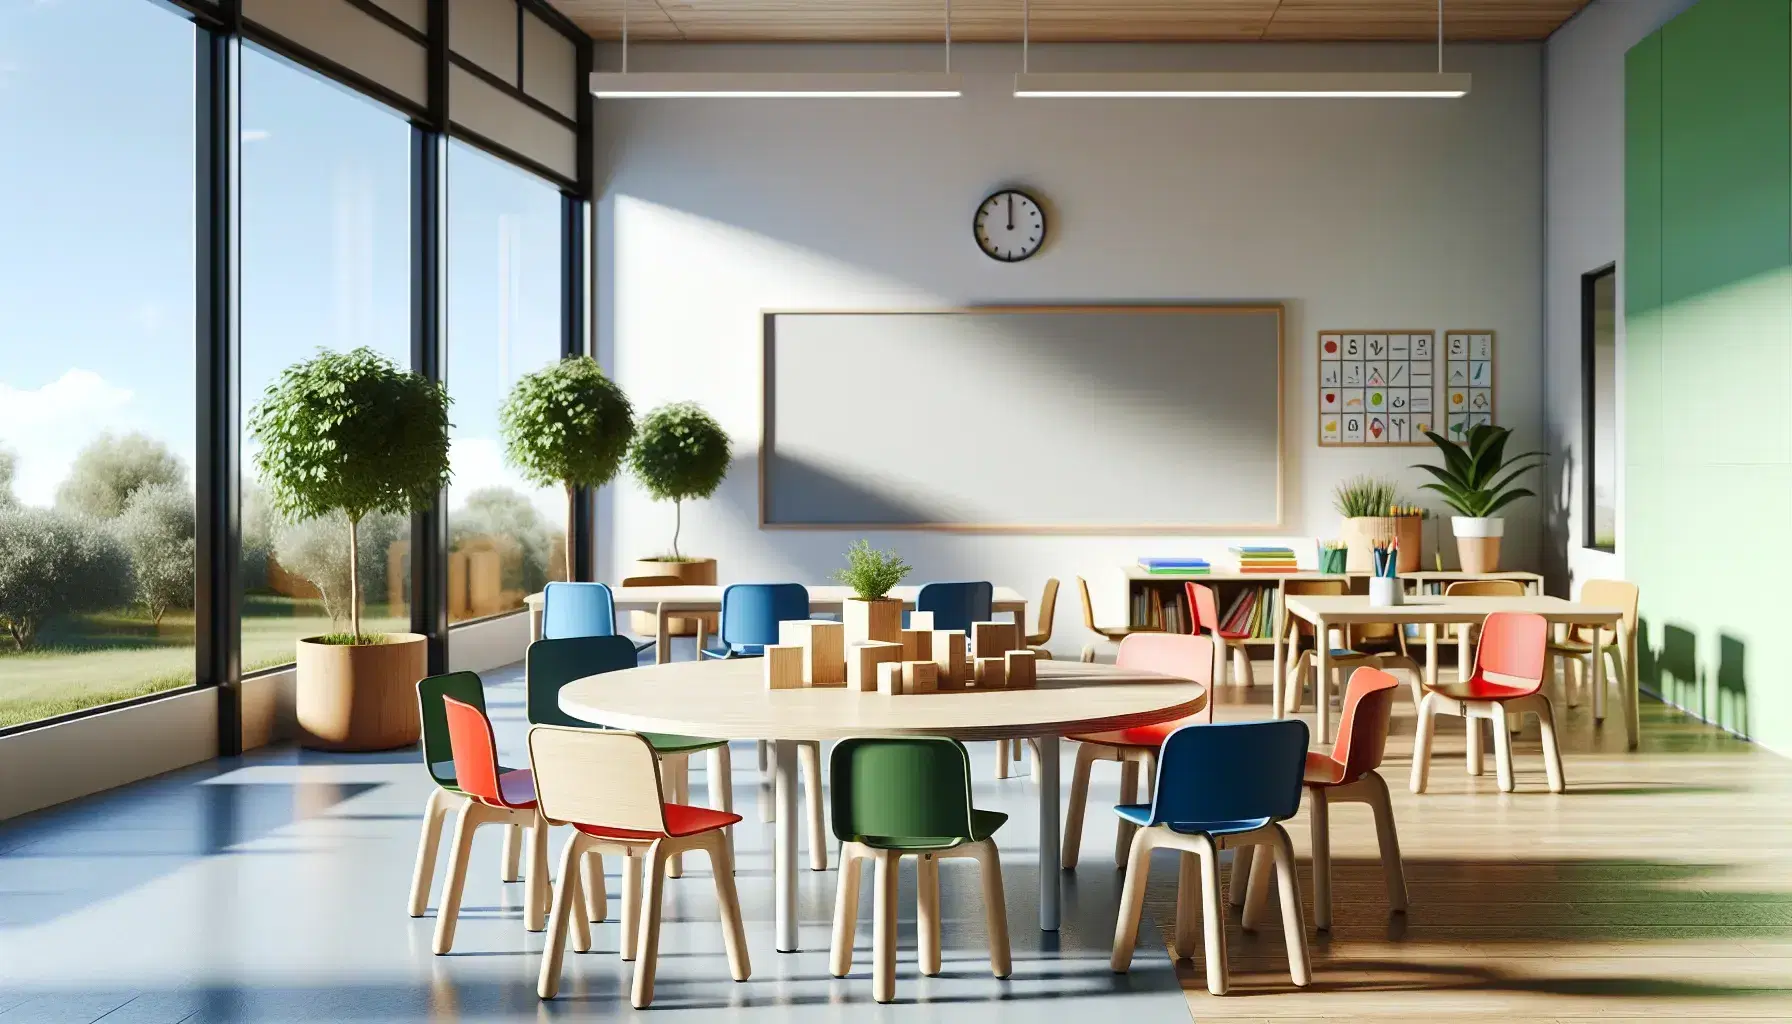 Aula escolar moderna y luminosa con mesa redonda de madera y sillas ergonómicas de colores, bloques de construcción y pizarra blanca, ventana con vista al exterior.